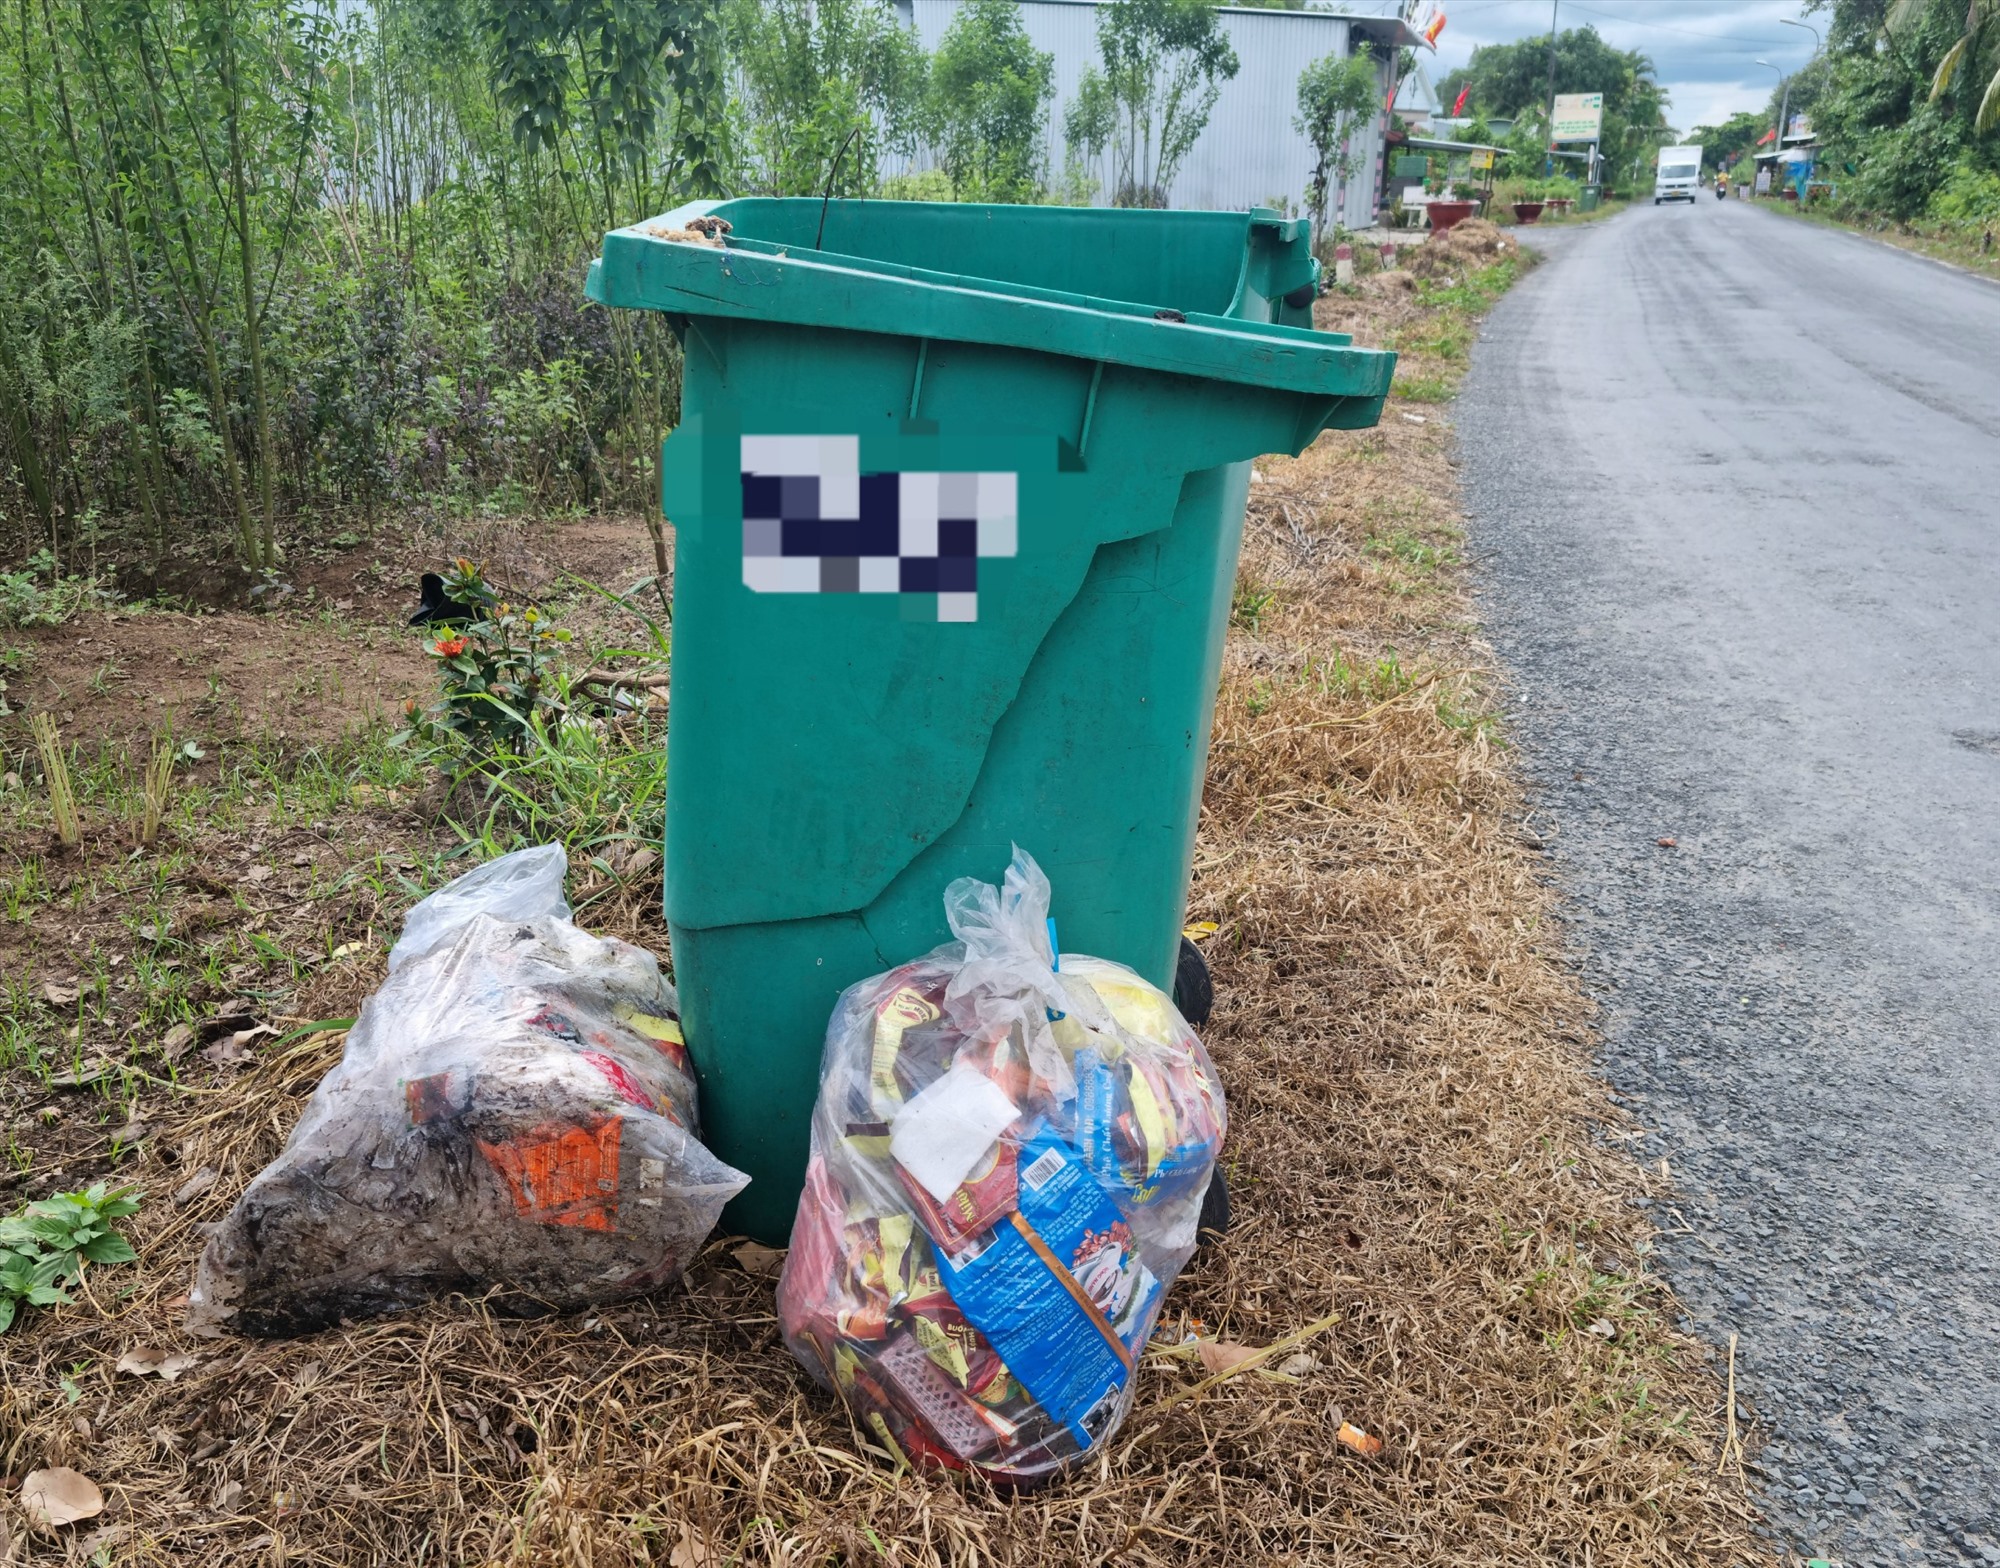 Trên địa bàn huyện có nhiều thùng chứa rác bị hư hỏng, không có nắp đậy nên để xảy ra tình trạng rác vương vải ngoài đường và nước chứa trong thùng rác. Ảnh: Hoàng Lộc